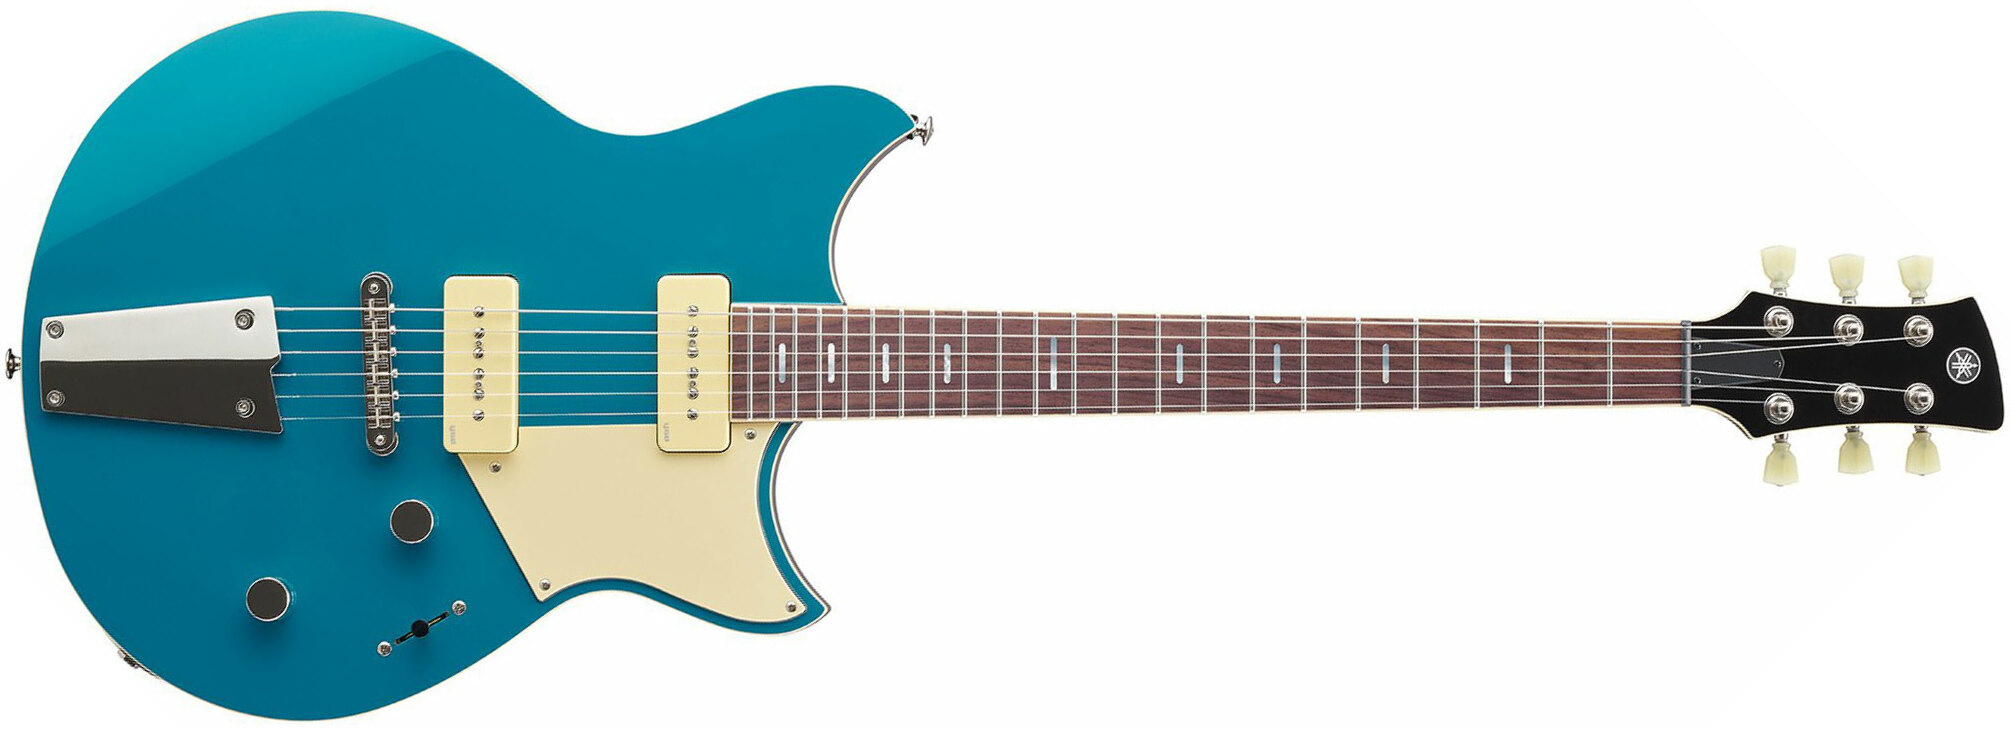 Yamaha Rss02t Revstar Standard 2p90 Ht Rw - Swift Blue - Guitarra eléctrica de doble corte - Main picture